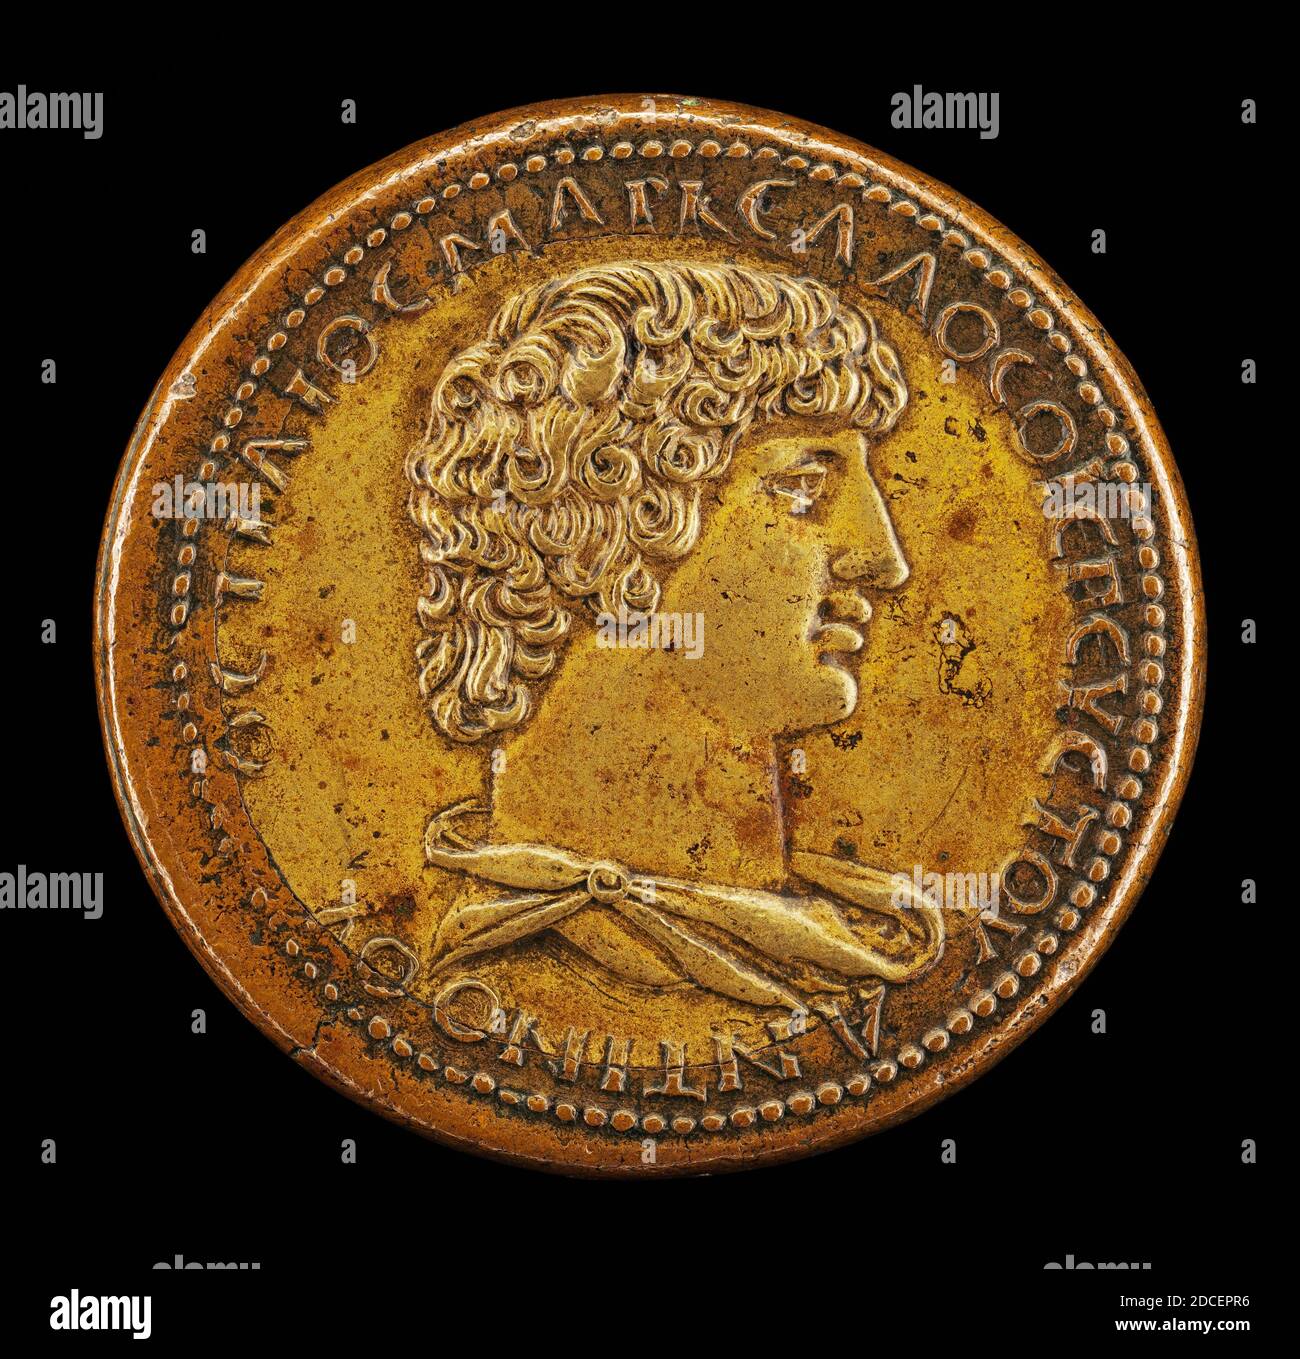 Giovanni da Cavino, (artiste), Paduan, 1500 - 1570, Antinous, mourut A.D. 130, favori de l'empereur Hadrien, bronze et cuivre/frappé, total (diamètre): 4.13 cm (1 5/8 po), poids brut: 48.21 gr (0.106 lb), axe: 11:00 Banque D'Images